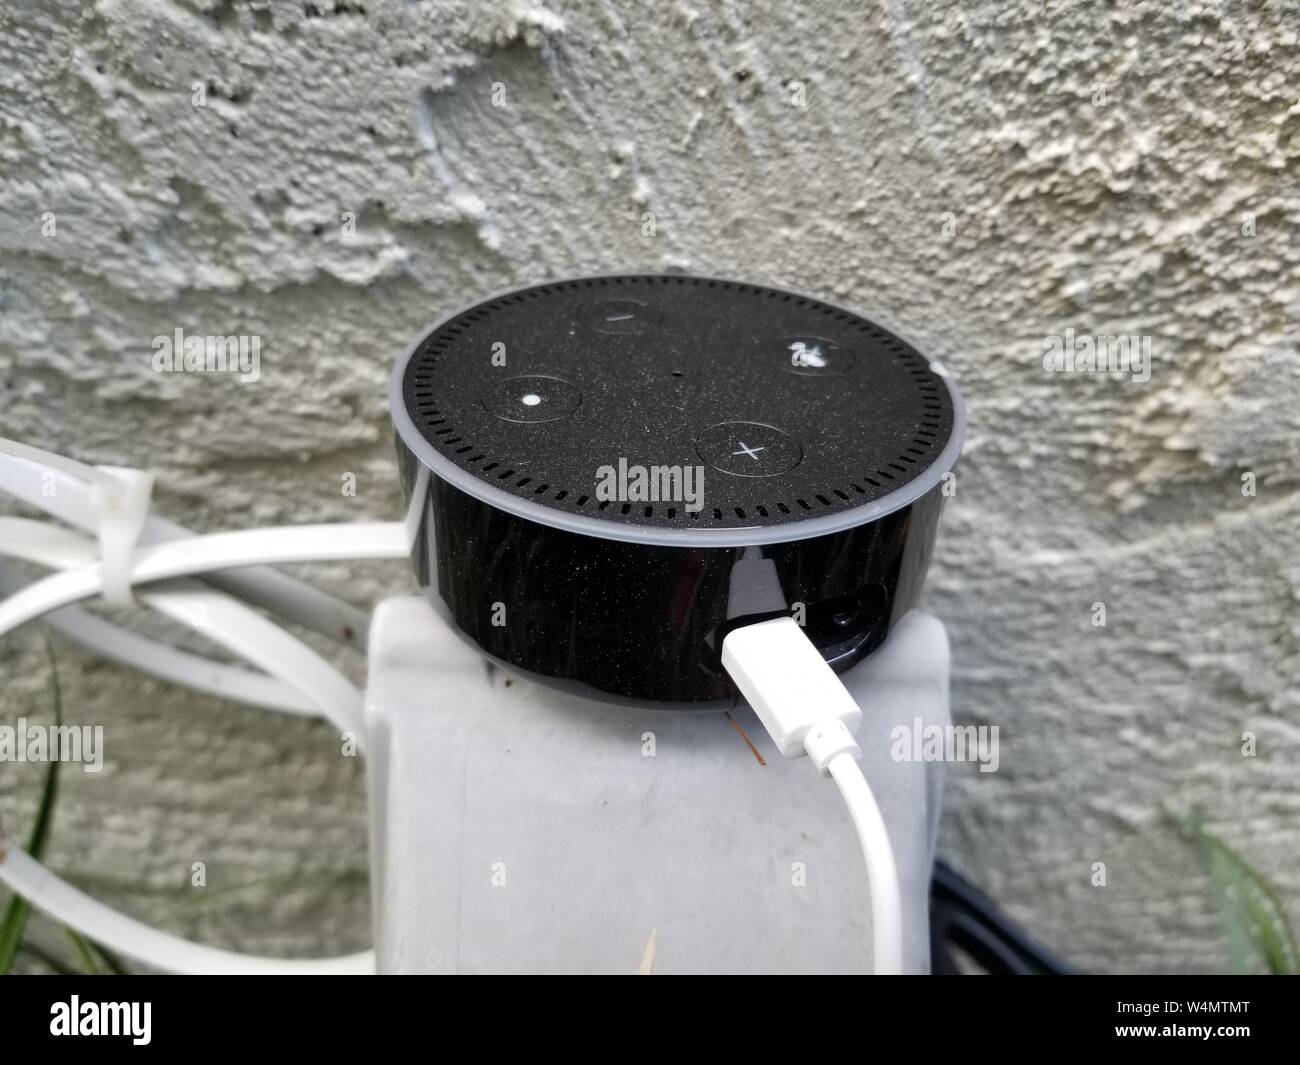 amazon echo outdoor speakers